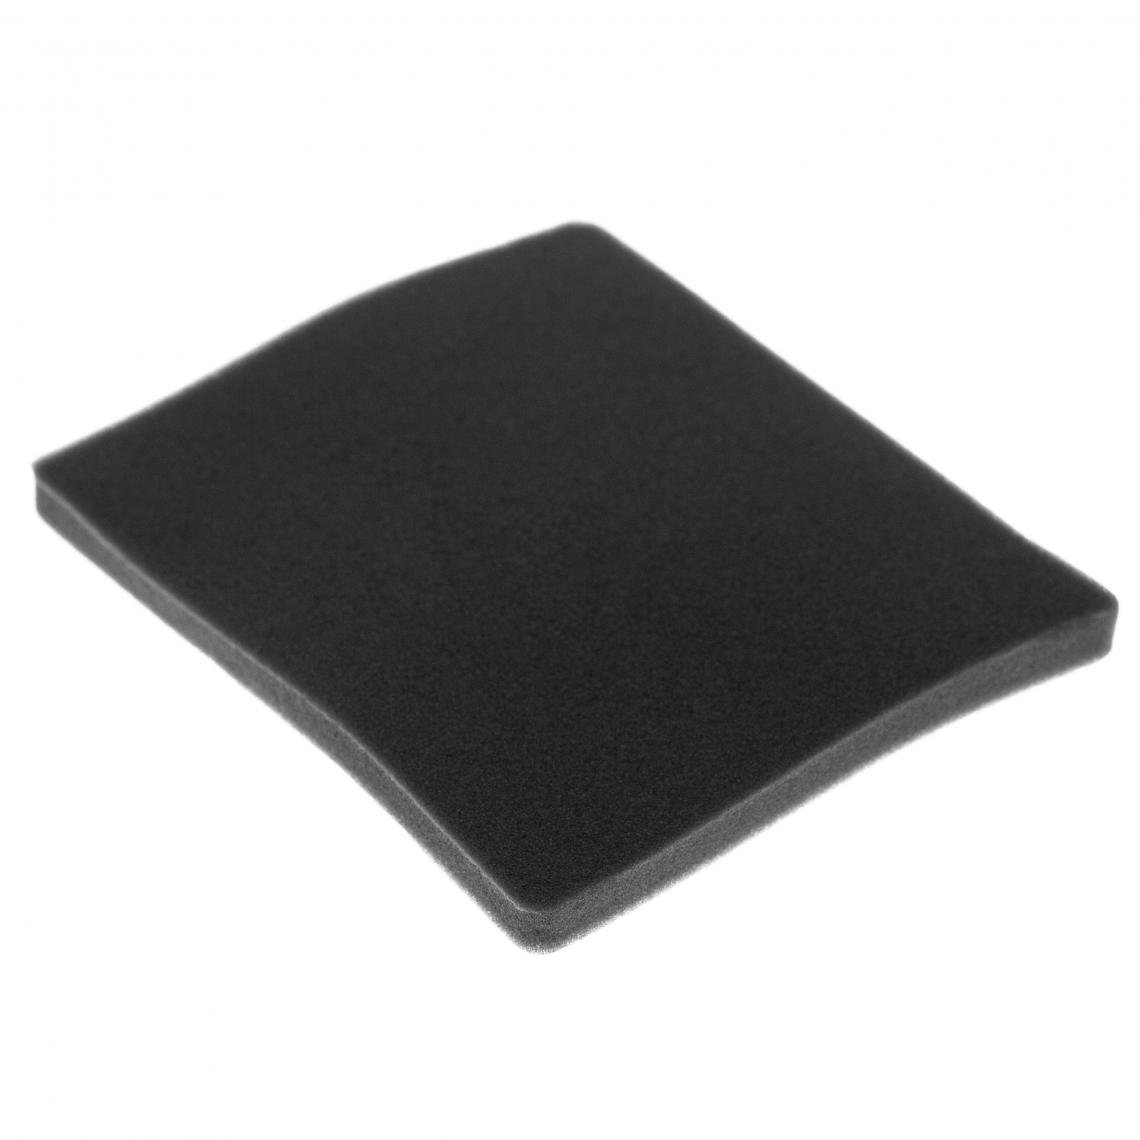 Vhbw - vhbw Filtre compatible avec Electrolux ZSC69FD2 (903151901) aspirateur - filtre de sortie d'air (filtre éponge), noir - Accessoire entretien des sols